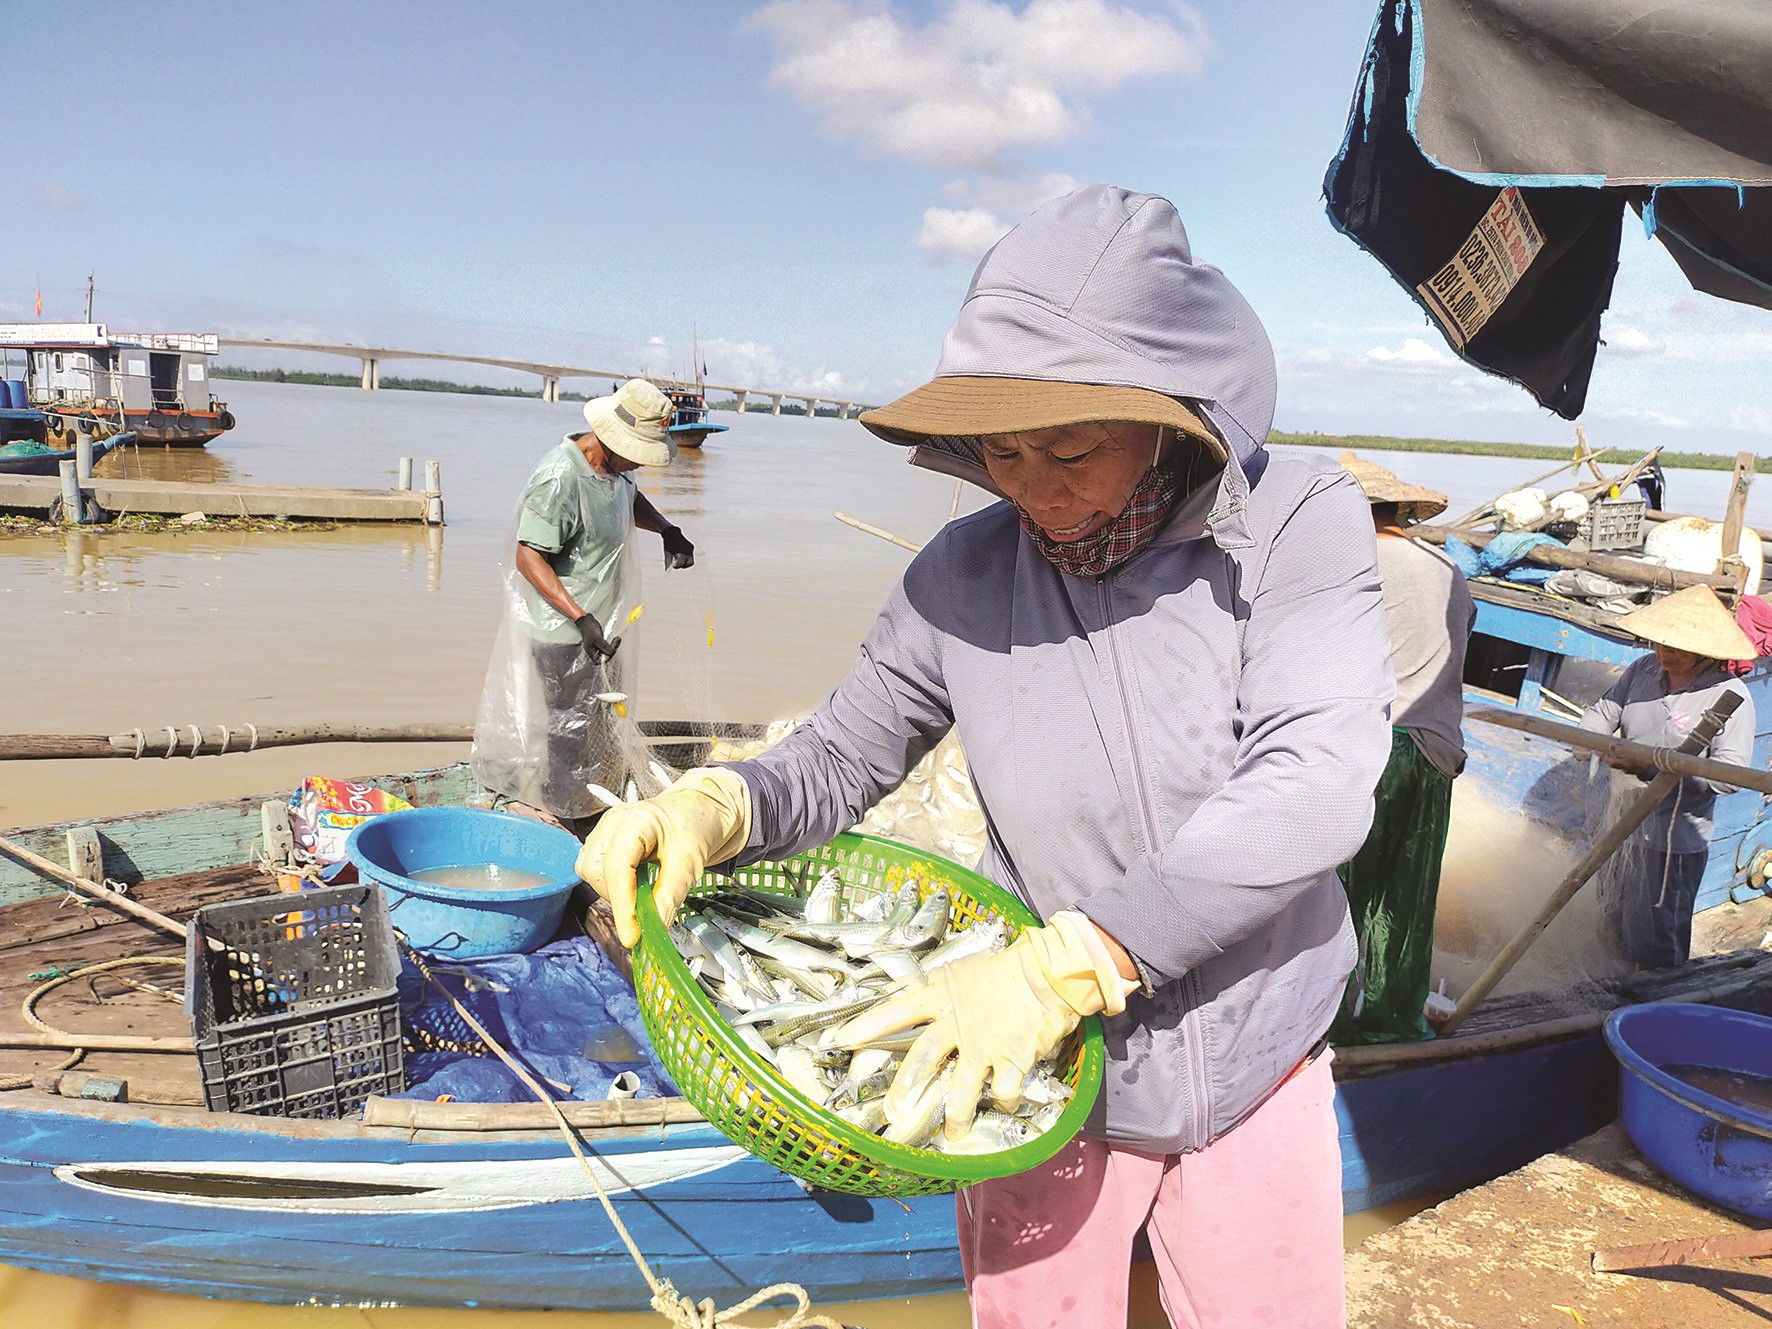 Sau mỗi chuyến biển vùng bãi ngang, phụ nữ hỗ trợ cánh đàn ông gỡ cá, phân loại và mang đi bán dạo hoặc đến chợ bán.